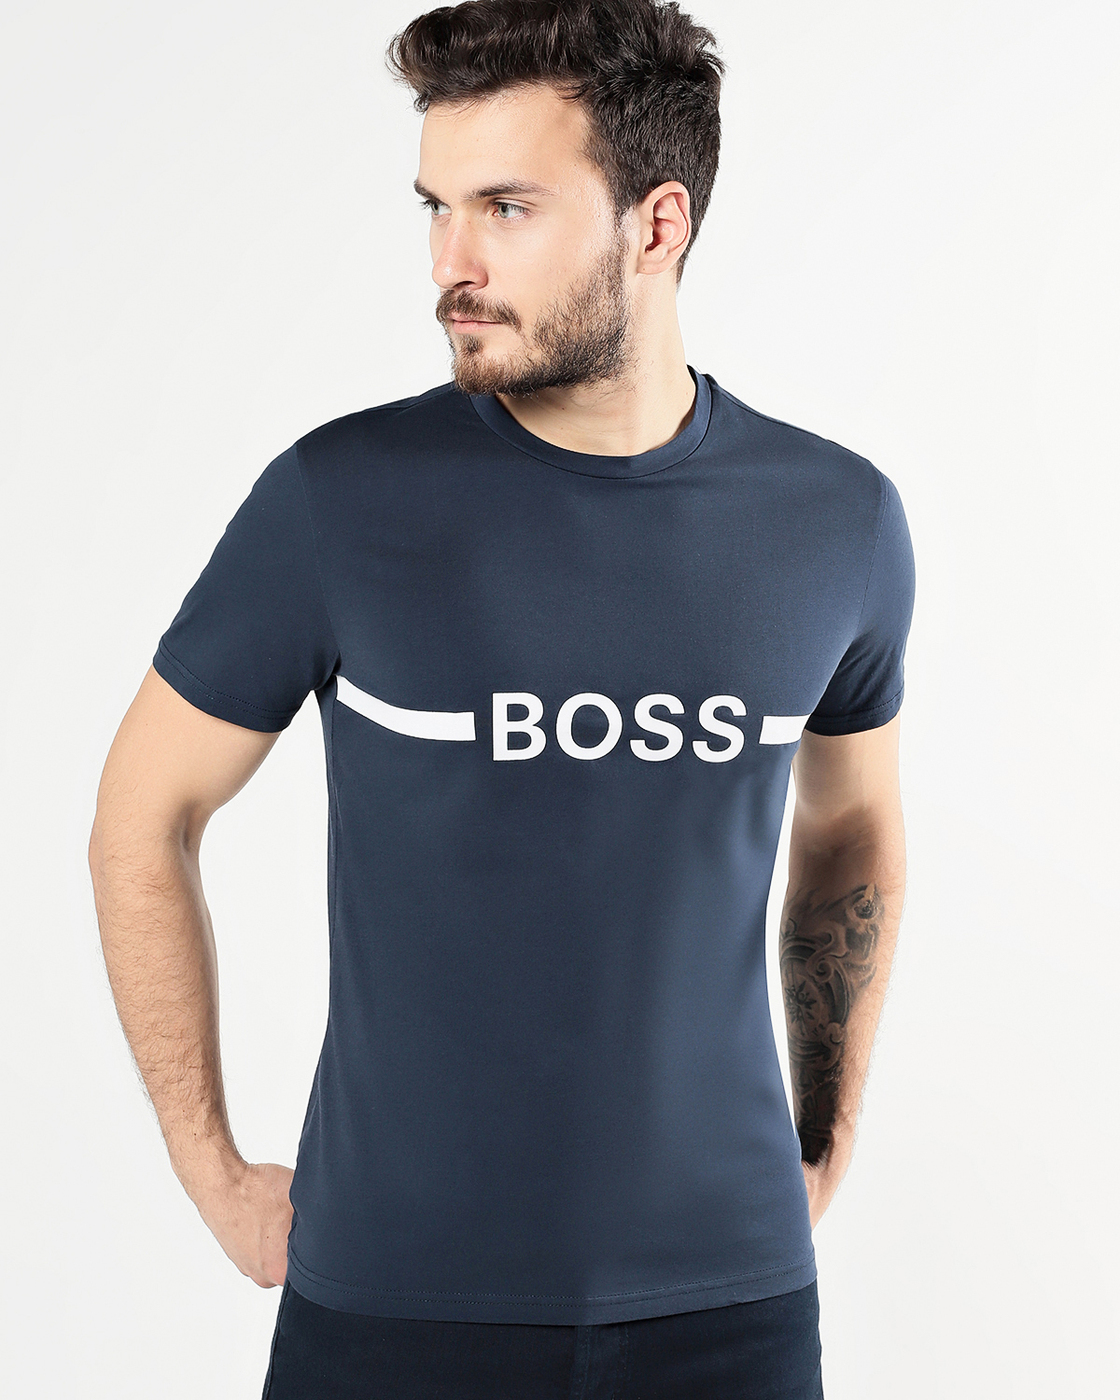 Купить футболку hugo. Майка Boss Hugo Boss. Футболка Boss Hugo Boss. Футболка Хьюго босс мужская. Футболка Hugo Boss 50488330.